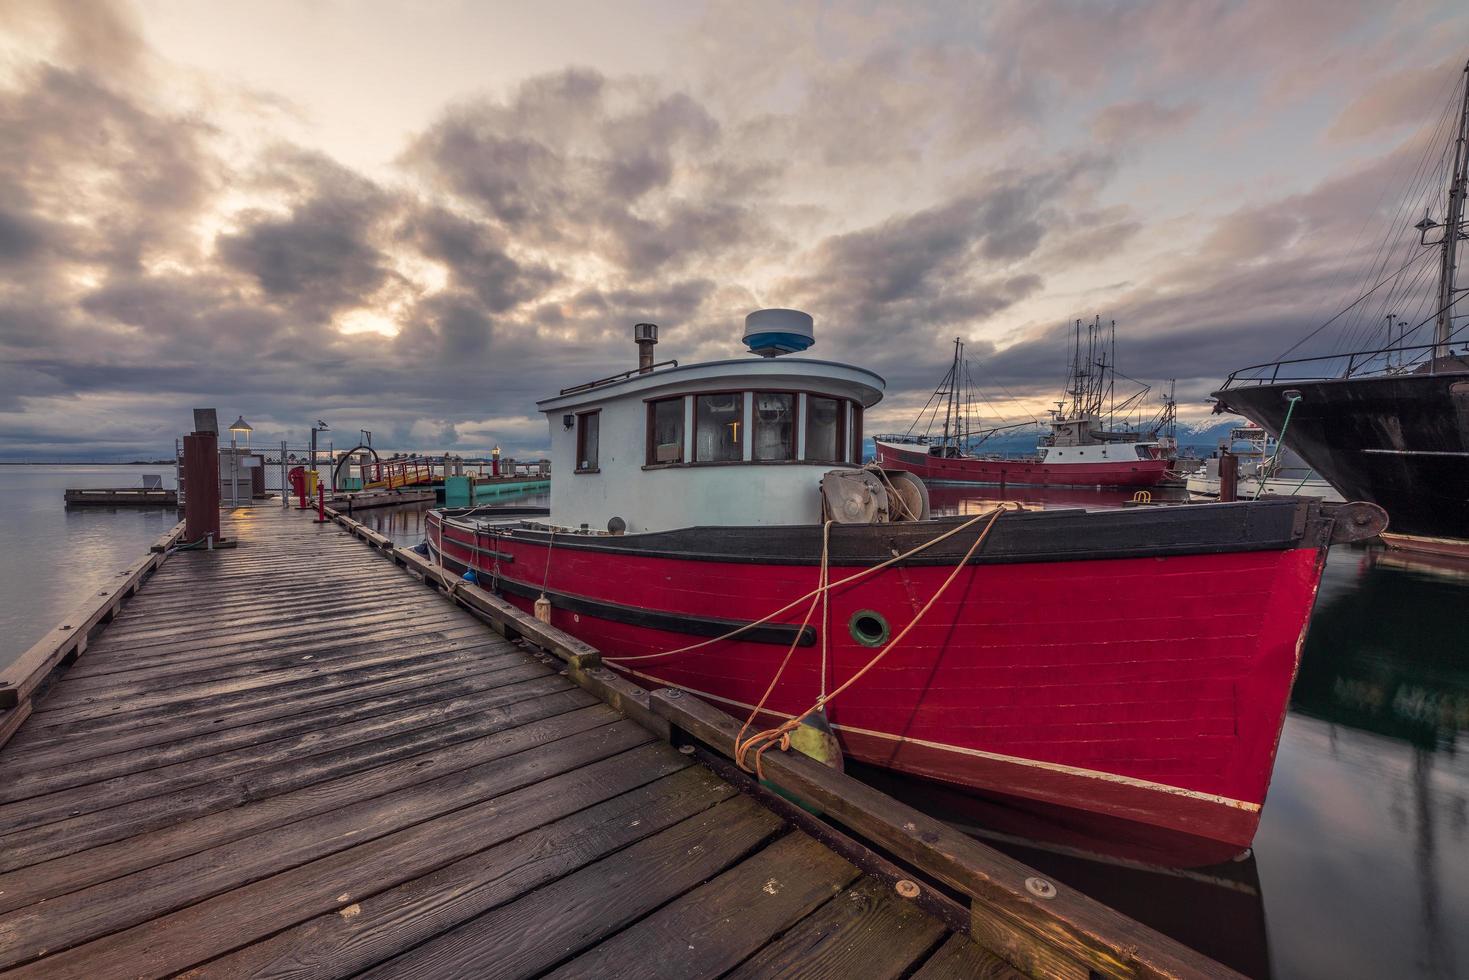 bateau rouge et blanc sur le quai sous un ciel nuageux photo